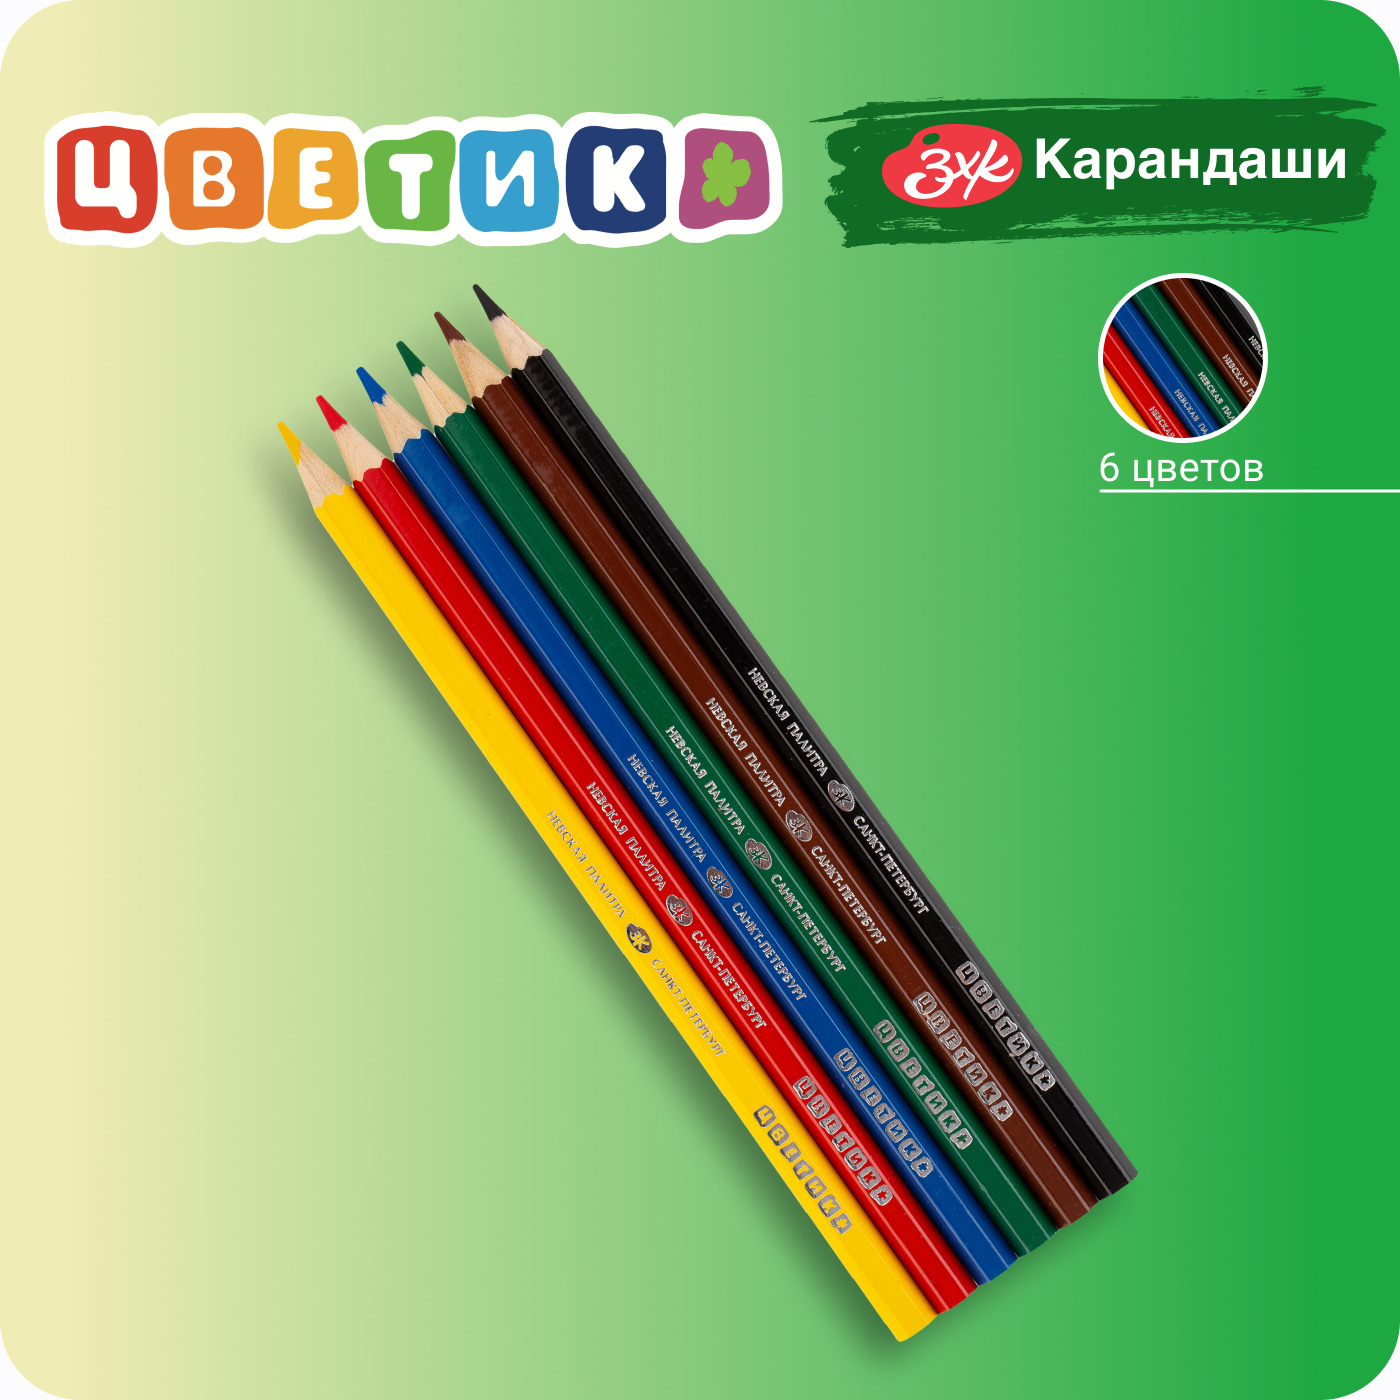 Набор цветных карандашей Невская палитра Цветик, 6 цветов